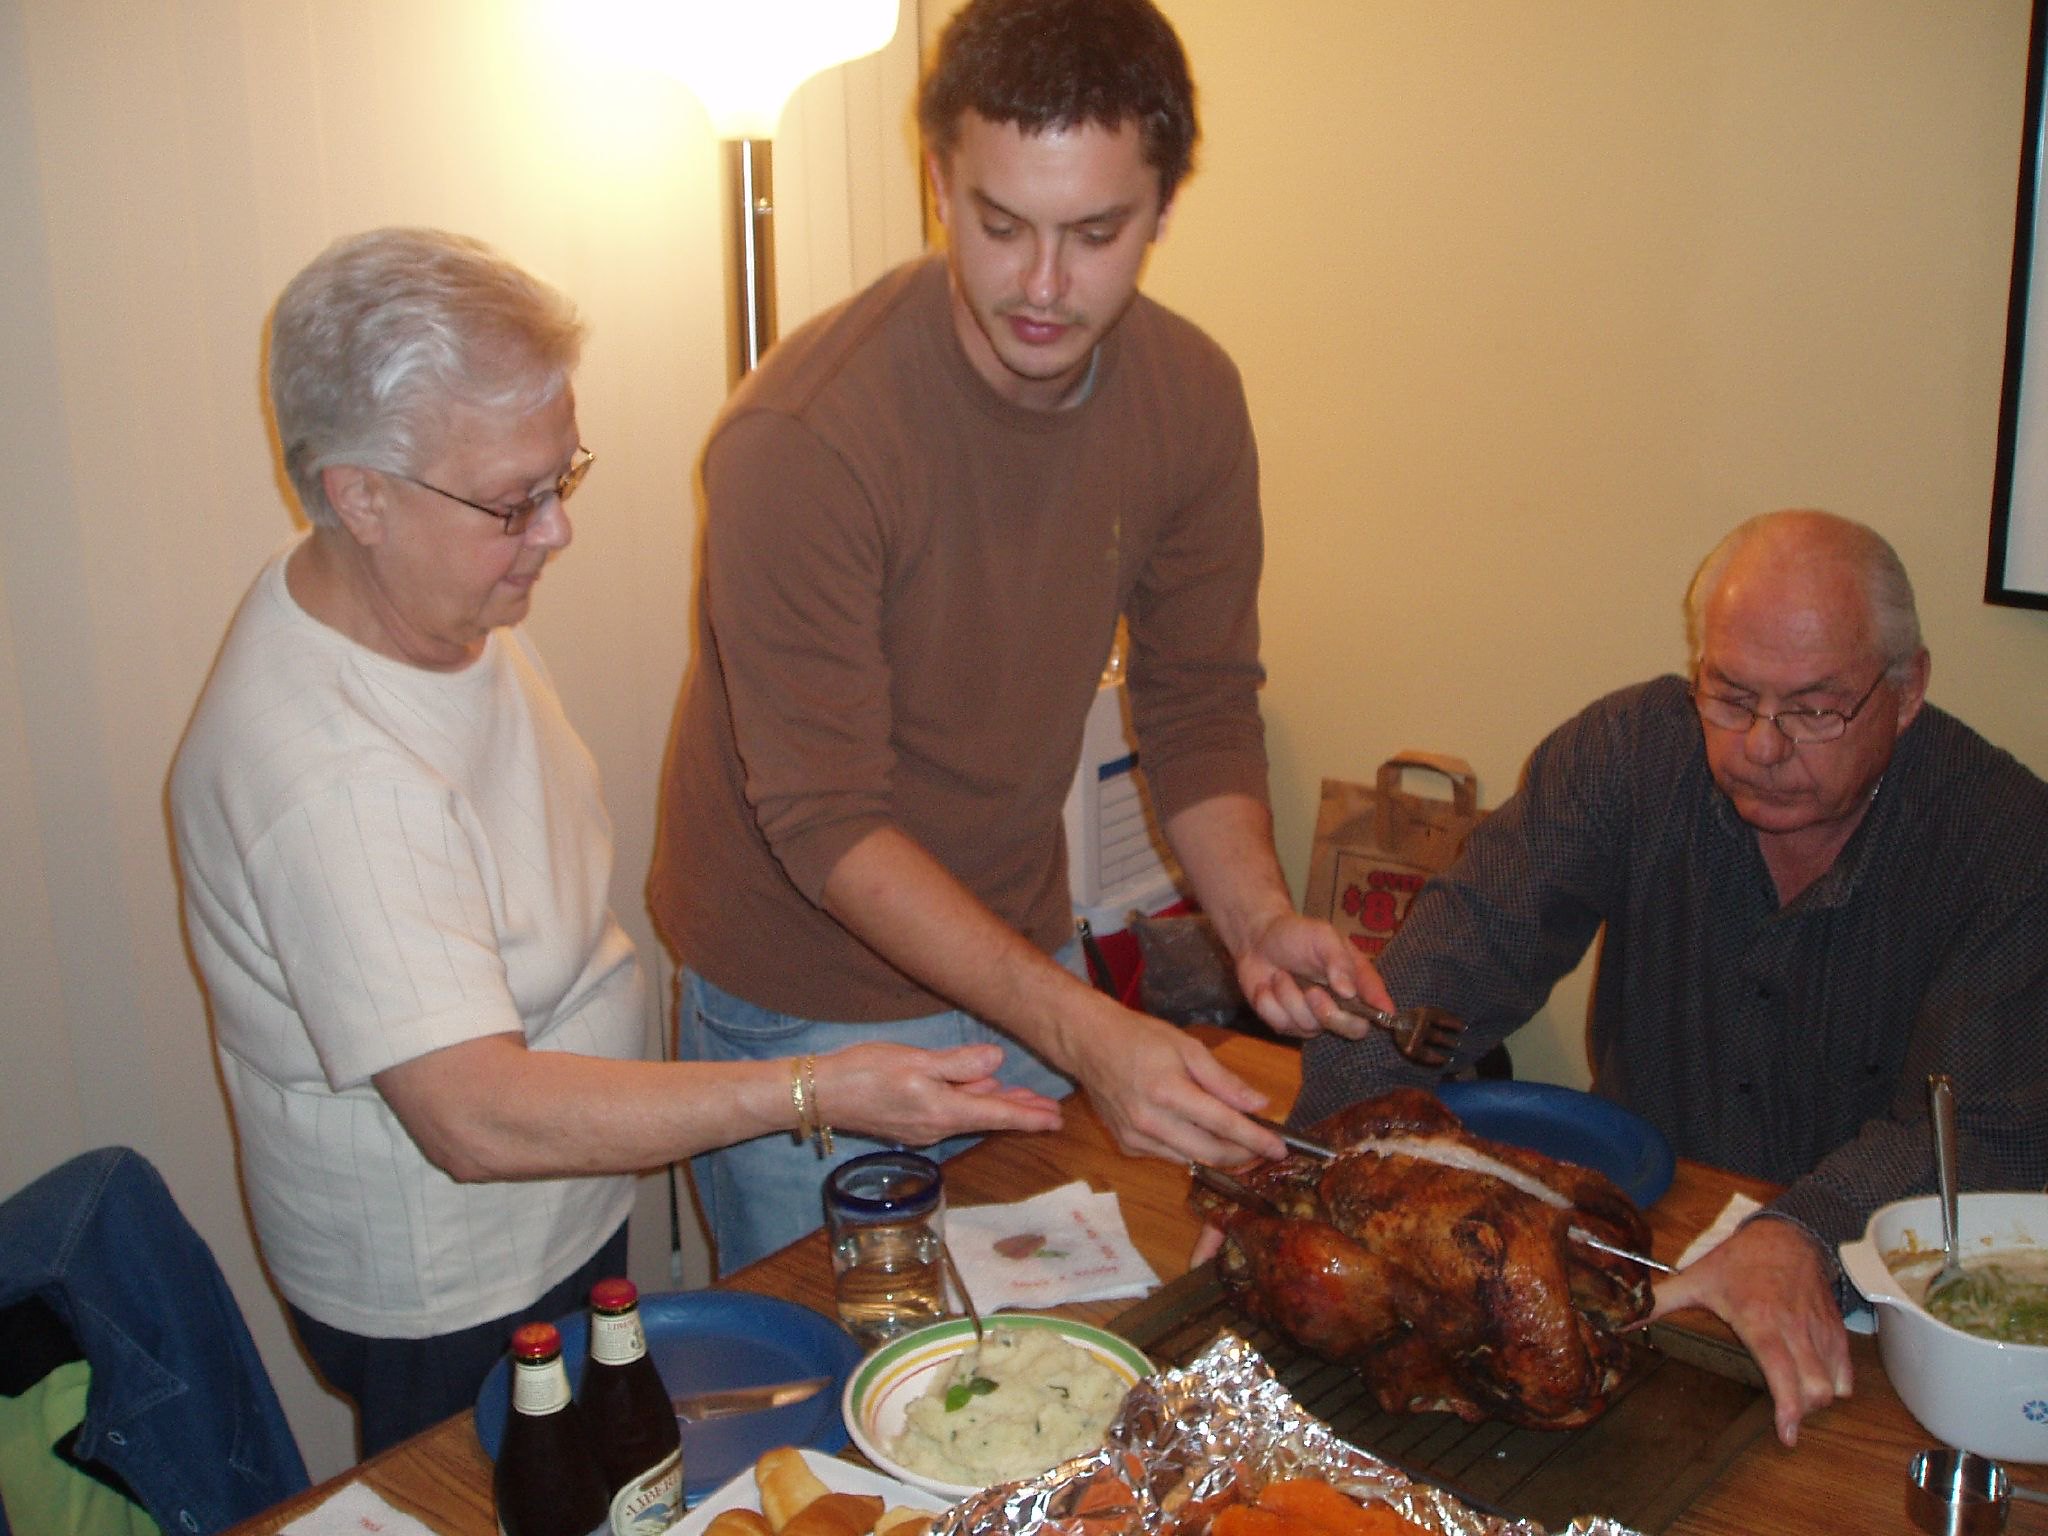 Eine dreiköpfige Familie versammelt sich zum Thanksgiving-Essen | Quelle: Flickr